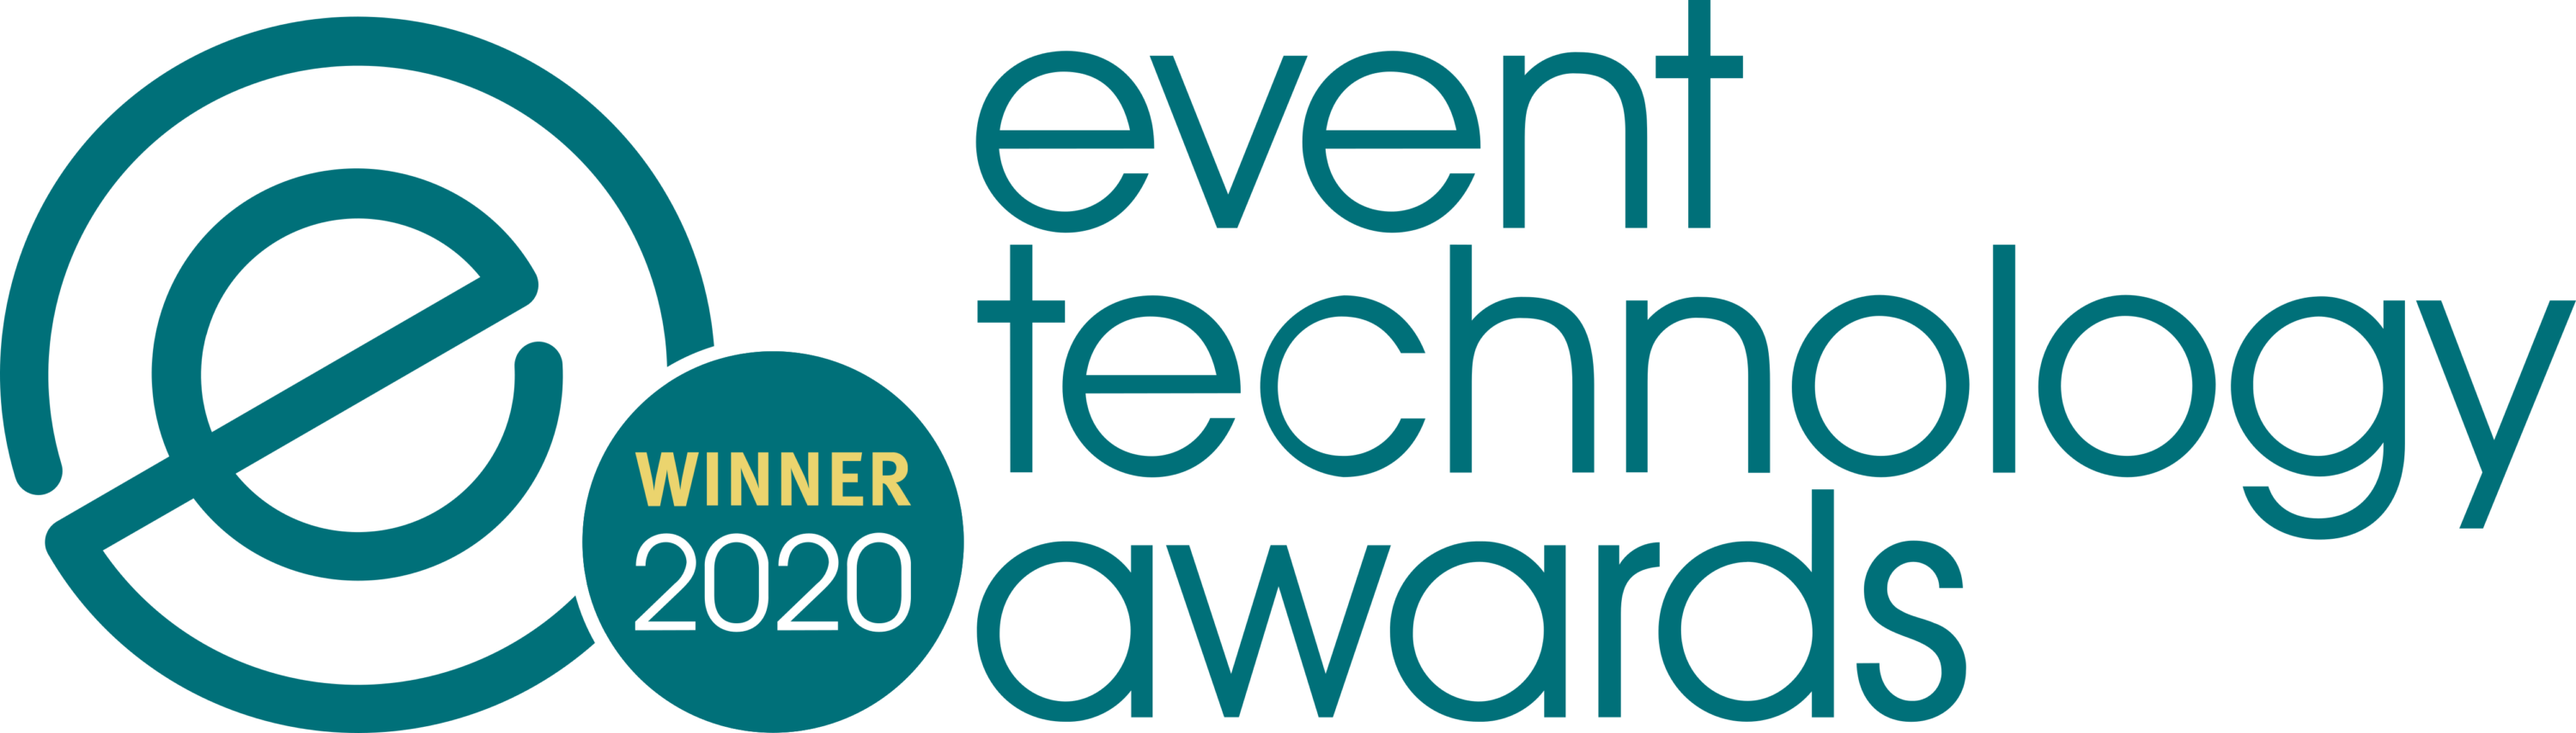 Event Technology Awards Winner Logo